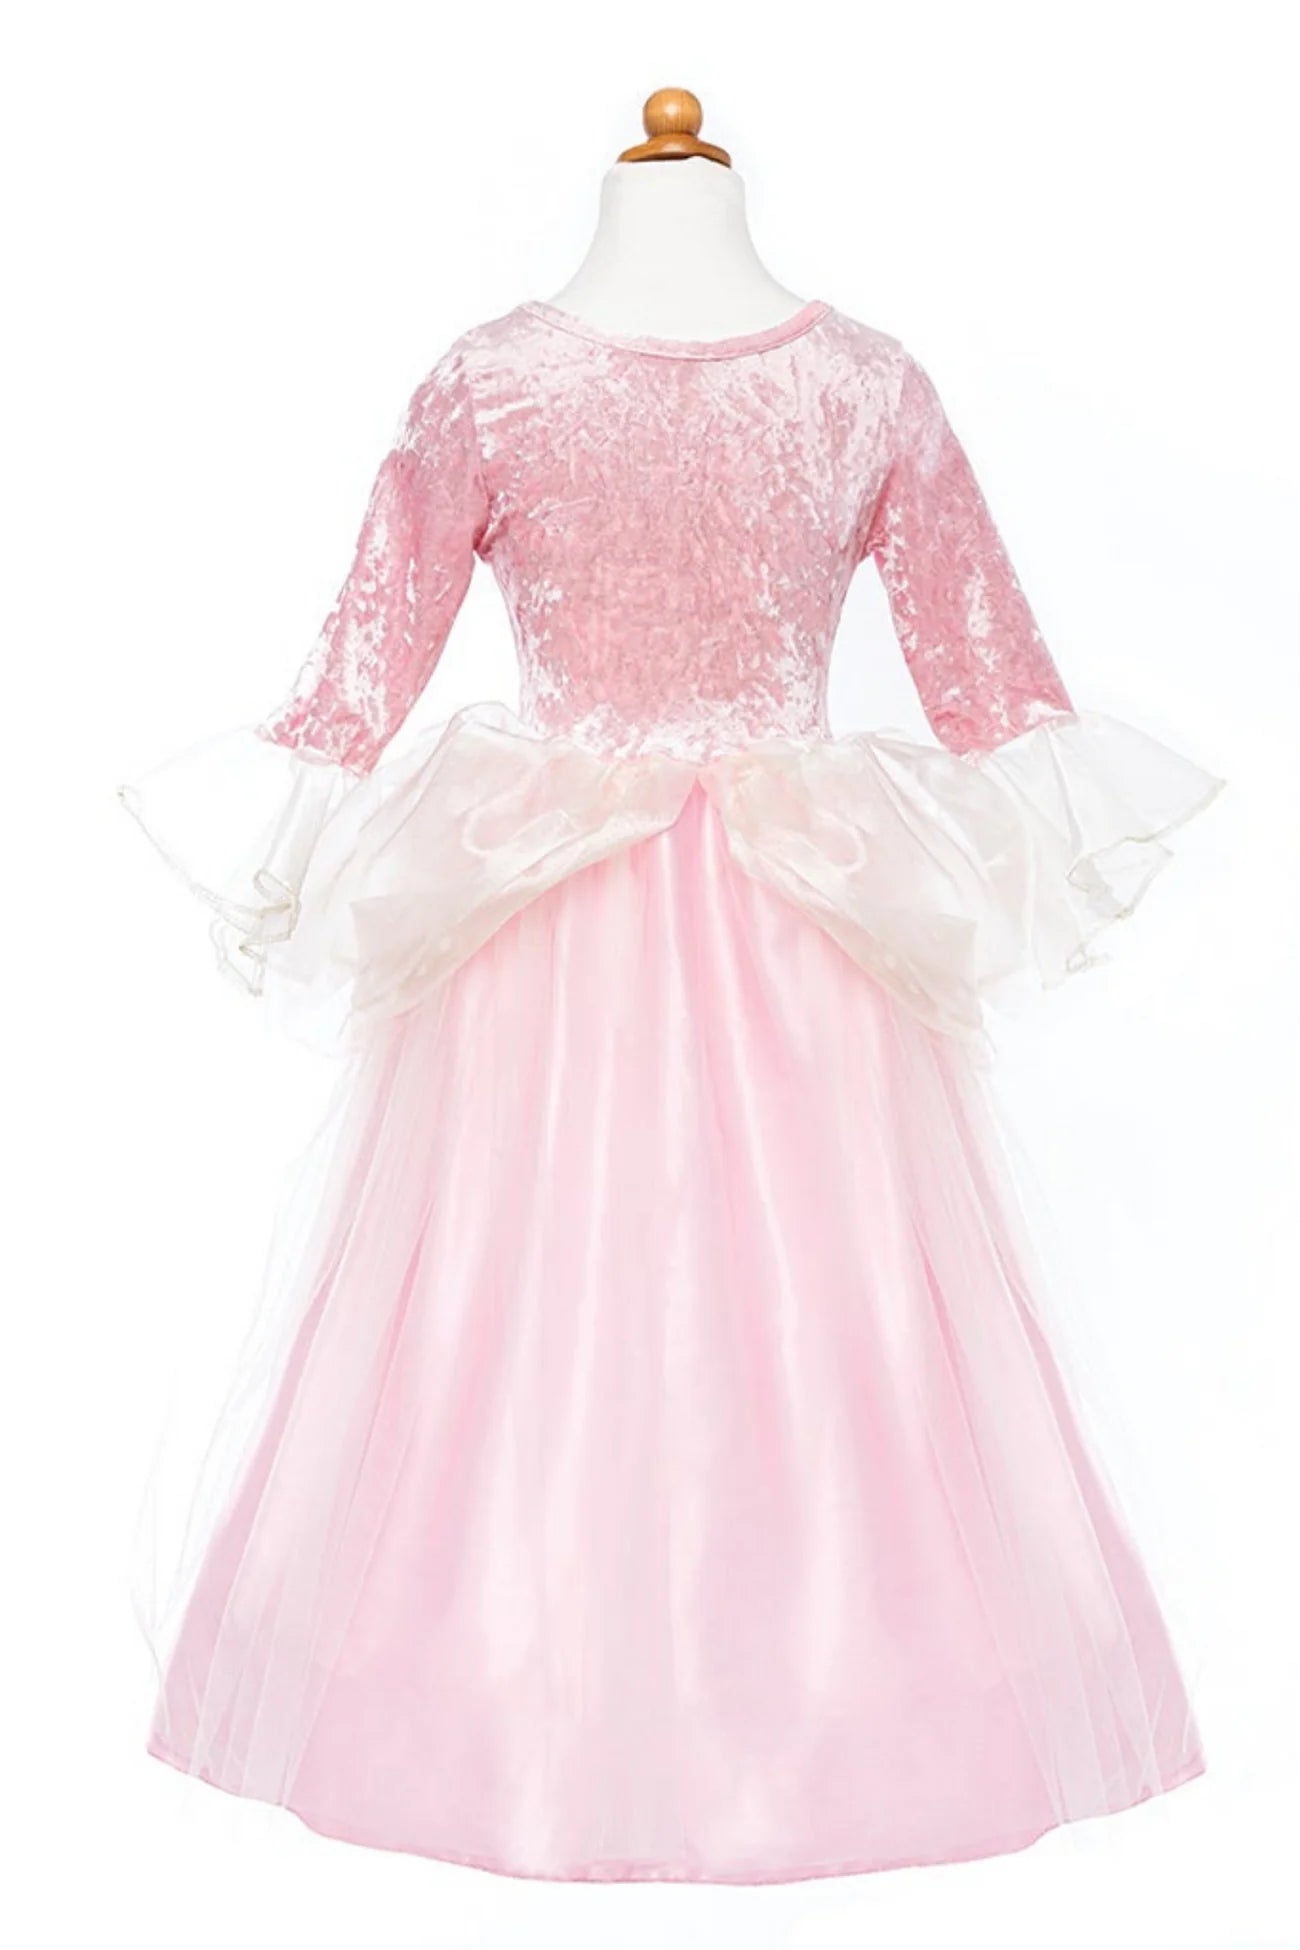 Prinsesse kjole, Pink Rose, 5-6 År, Great Pretenders